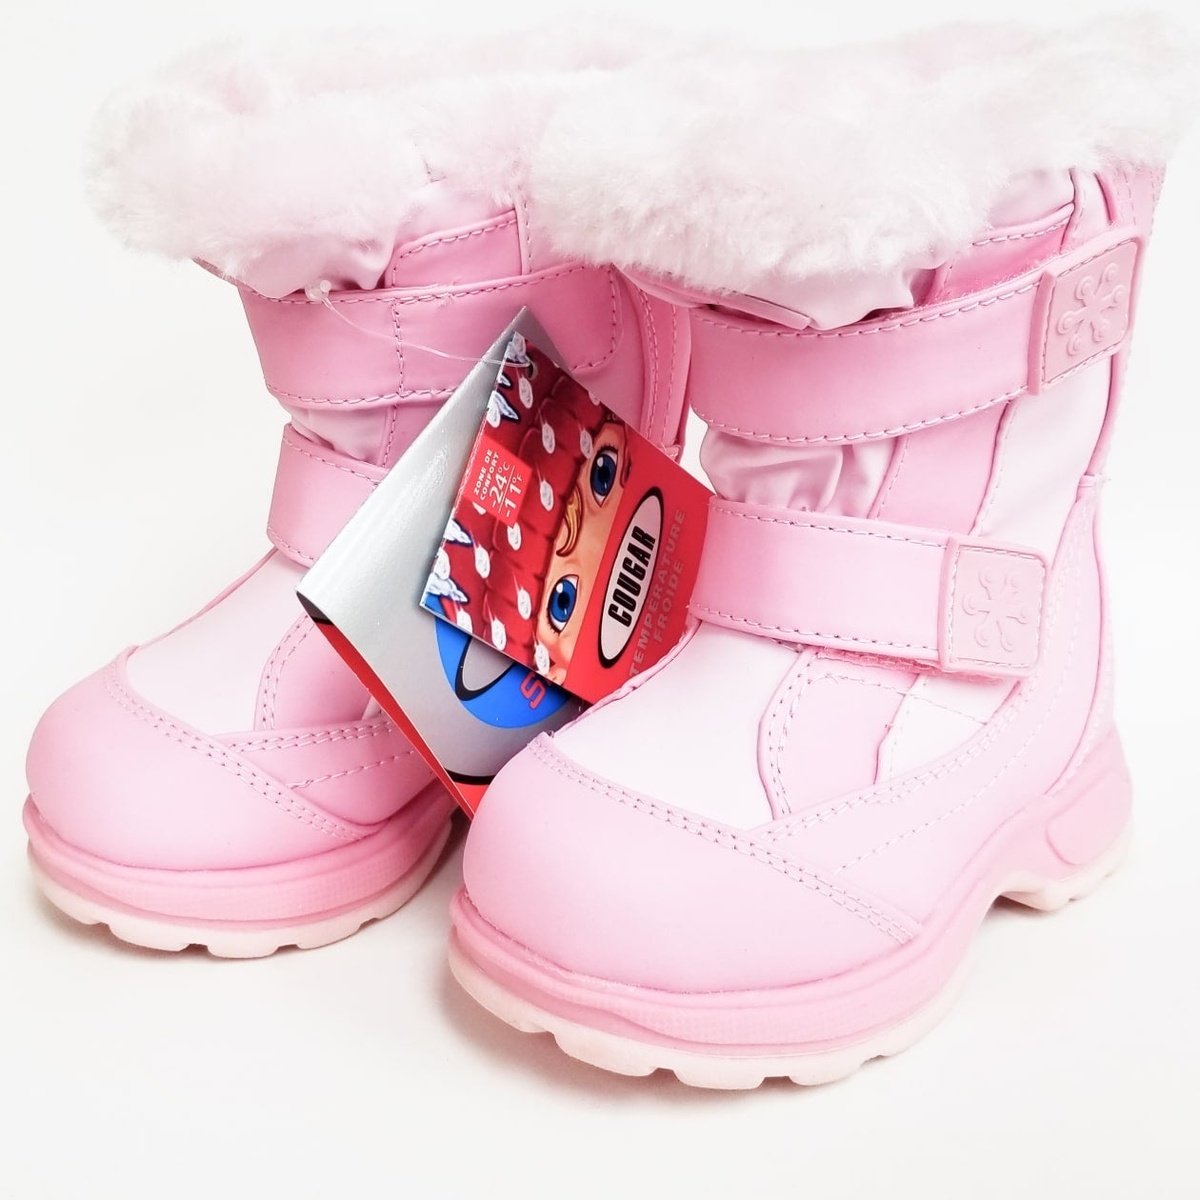 Cougar Girls Boots Winter Sport Waterproof Pink VJA575 - Cougar Boots